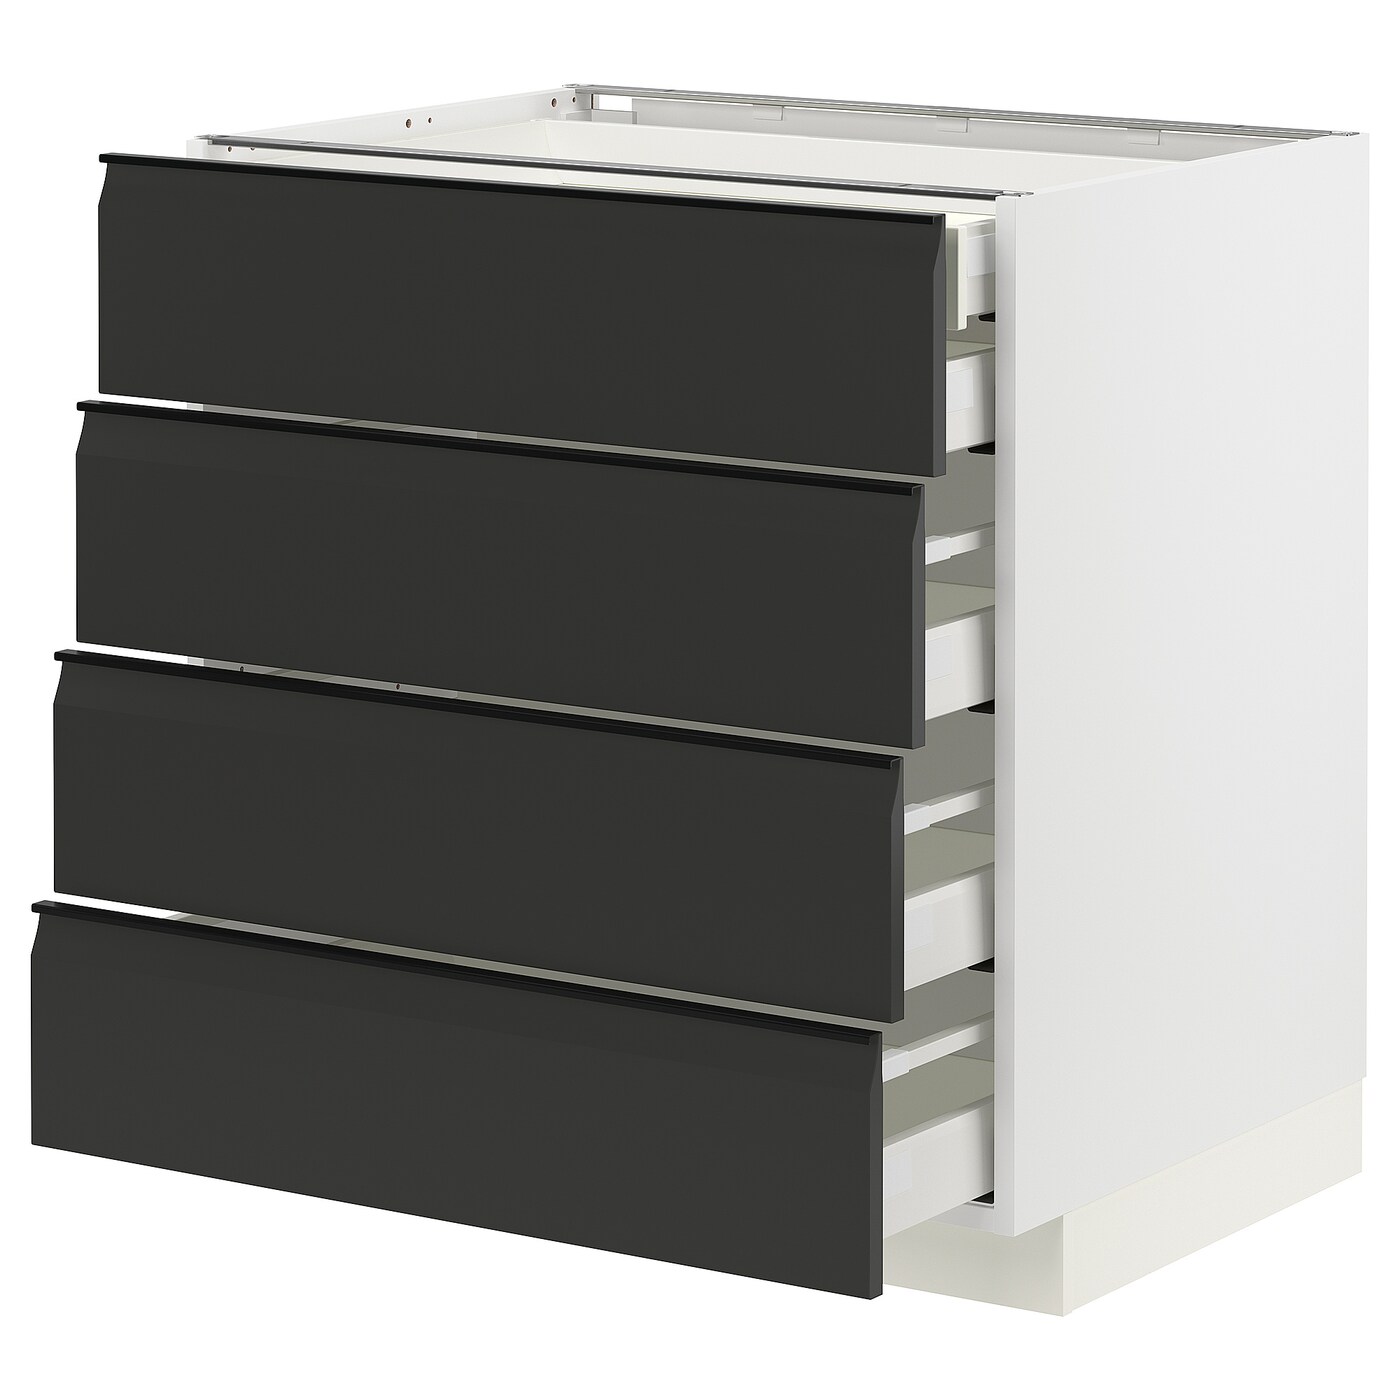 Напольный шкаф  - IKEA METOD MAXIMERA, 88x61,6x80см, белый/черный, МЕТОД МАКСИМЕРА ИКЕА